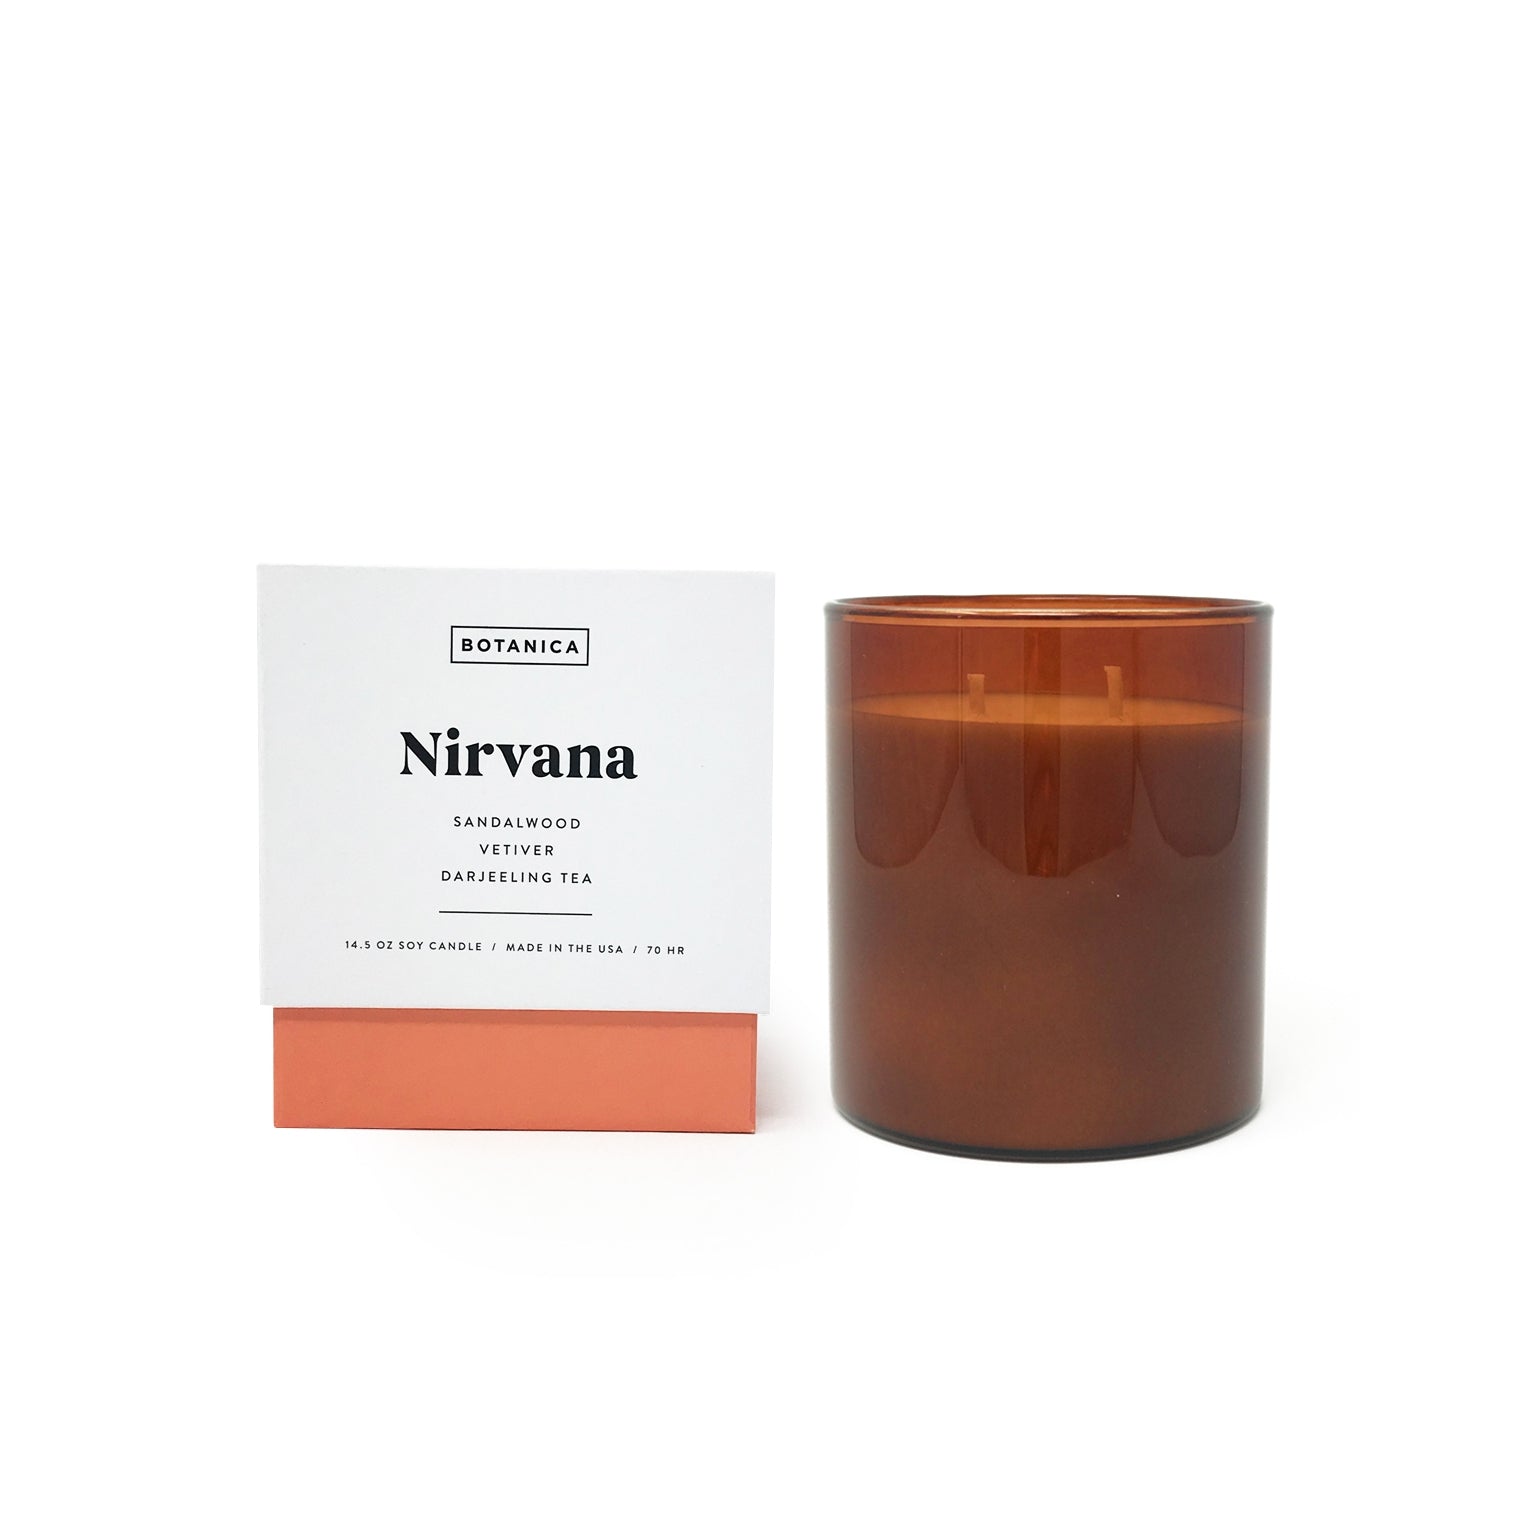 Nirvana Large Candle